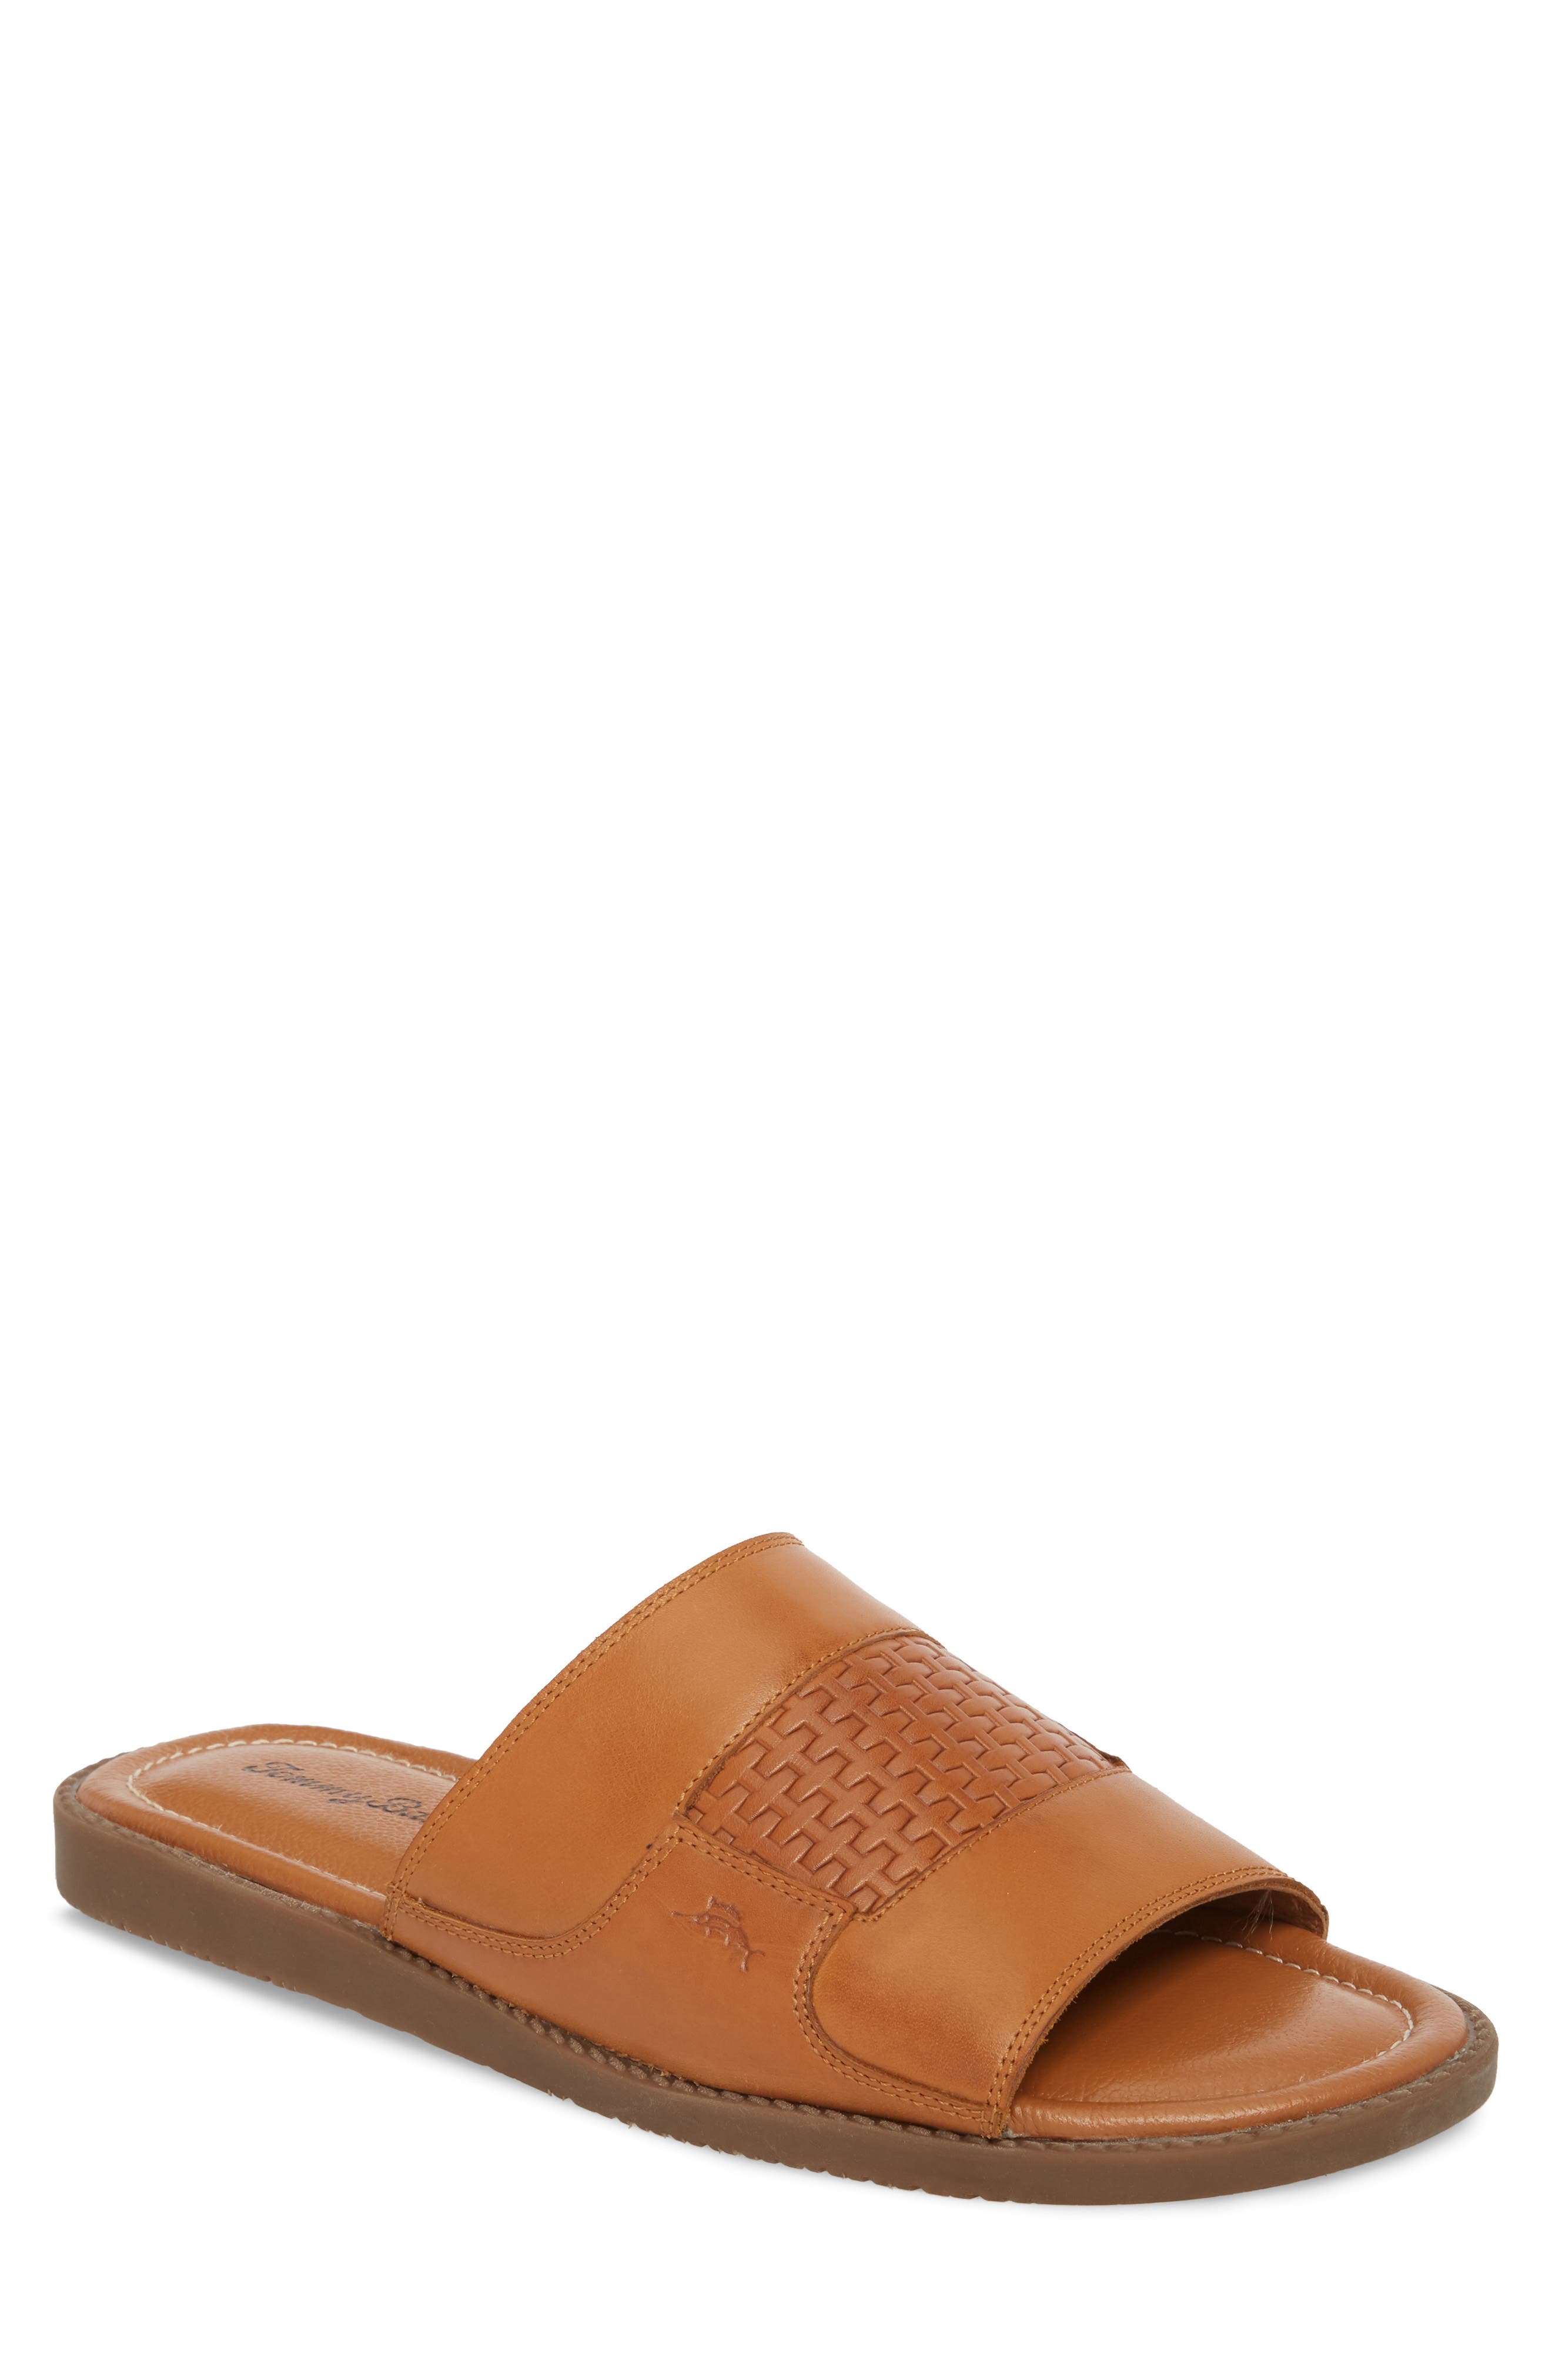 UPC 882976916987 product image for Men's Tommy Bahama Gennadi Palms Slide Sandal, Size 7 M - Brown | upcitemdb.com